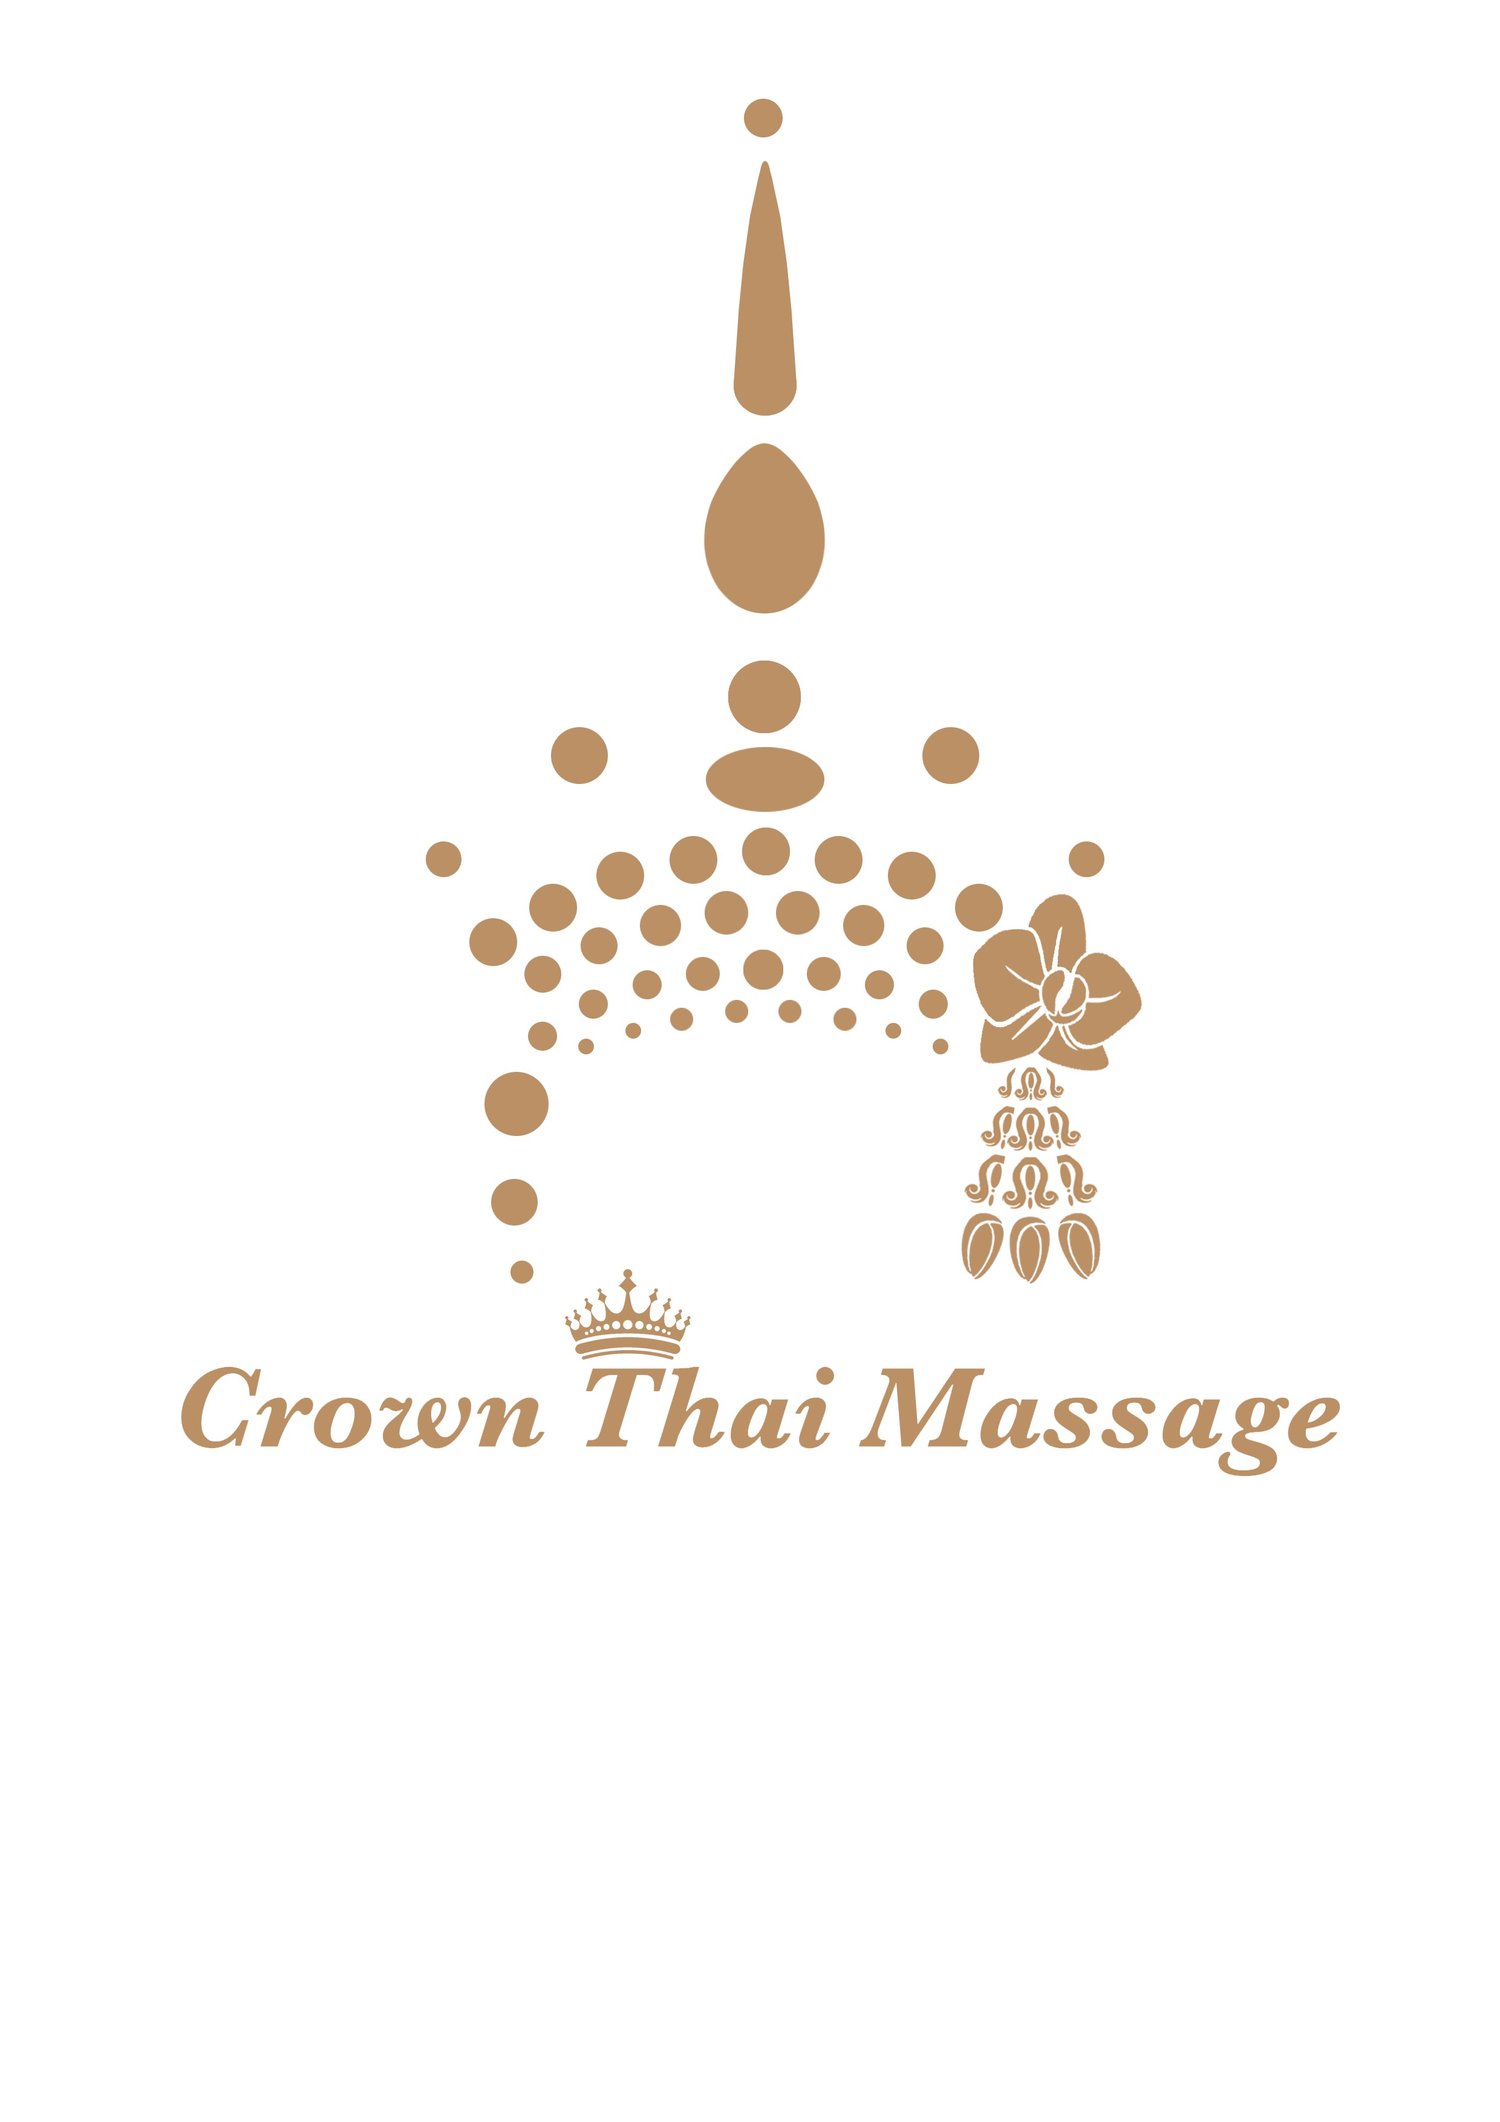 Crown Thai Massage